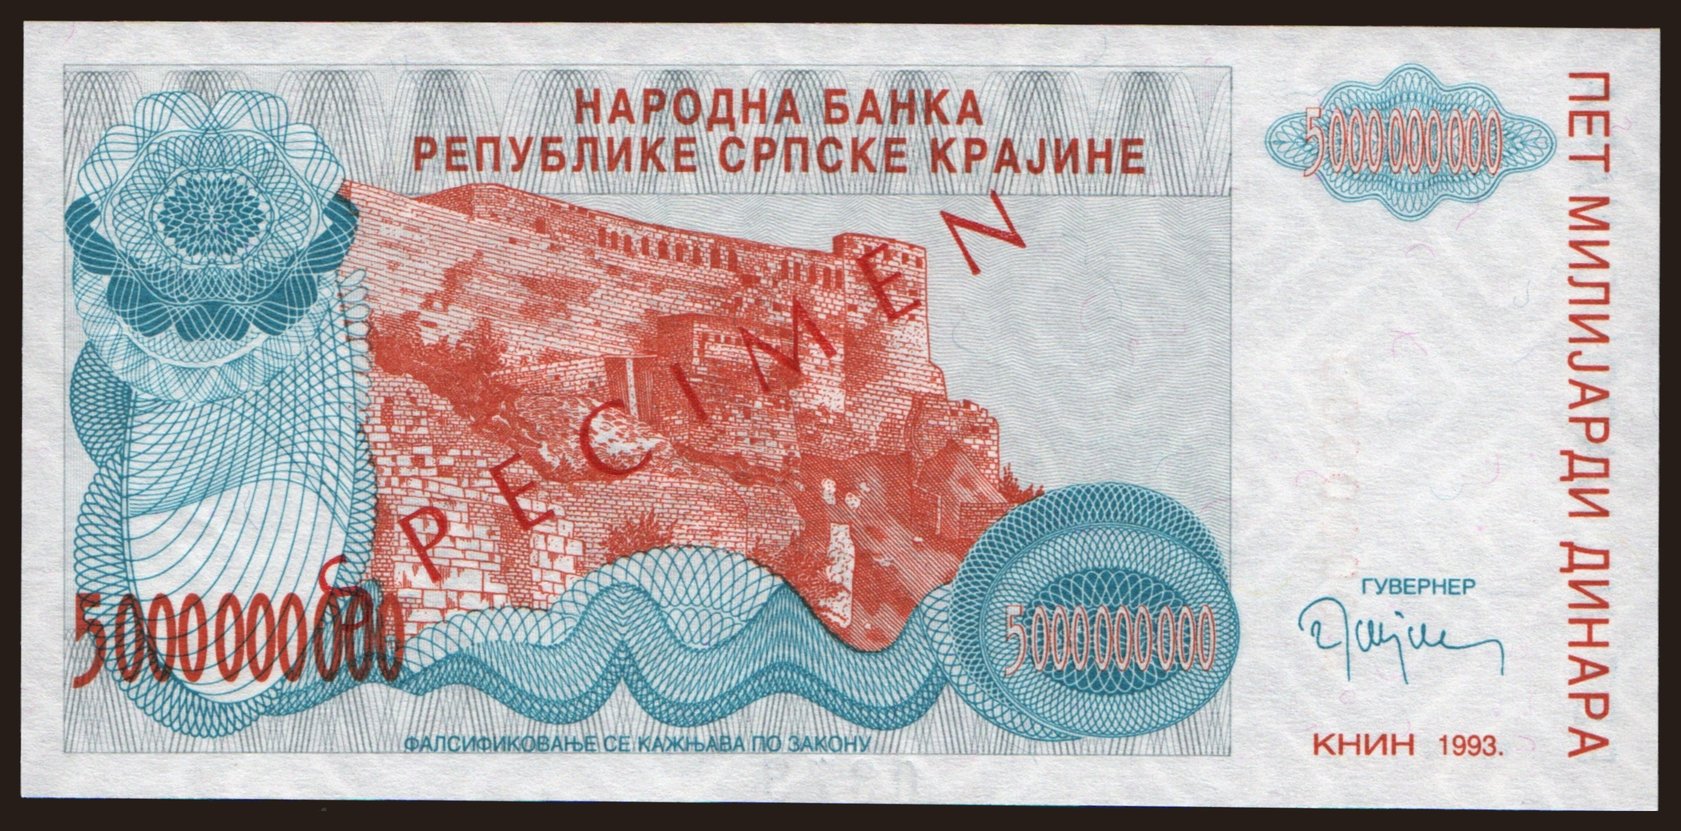 RSK, 5.000.000.000 dinara, 1993, SPECIMEN